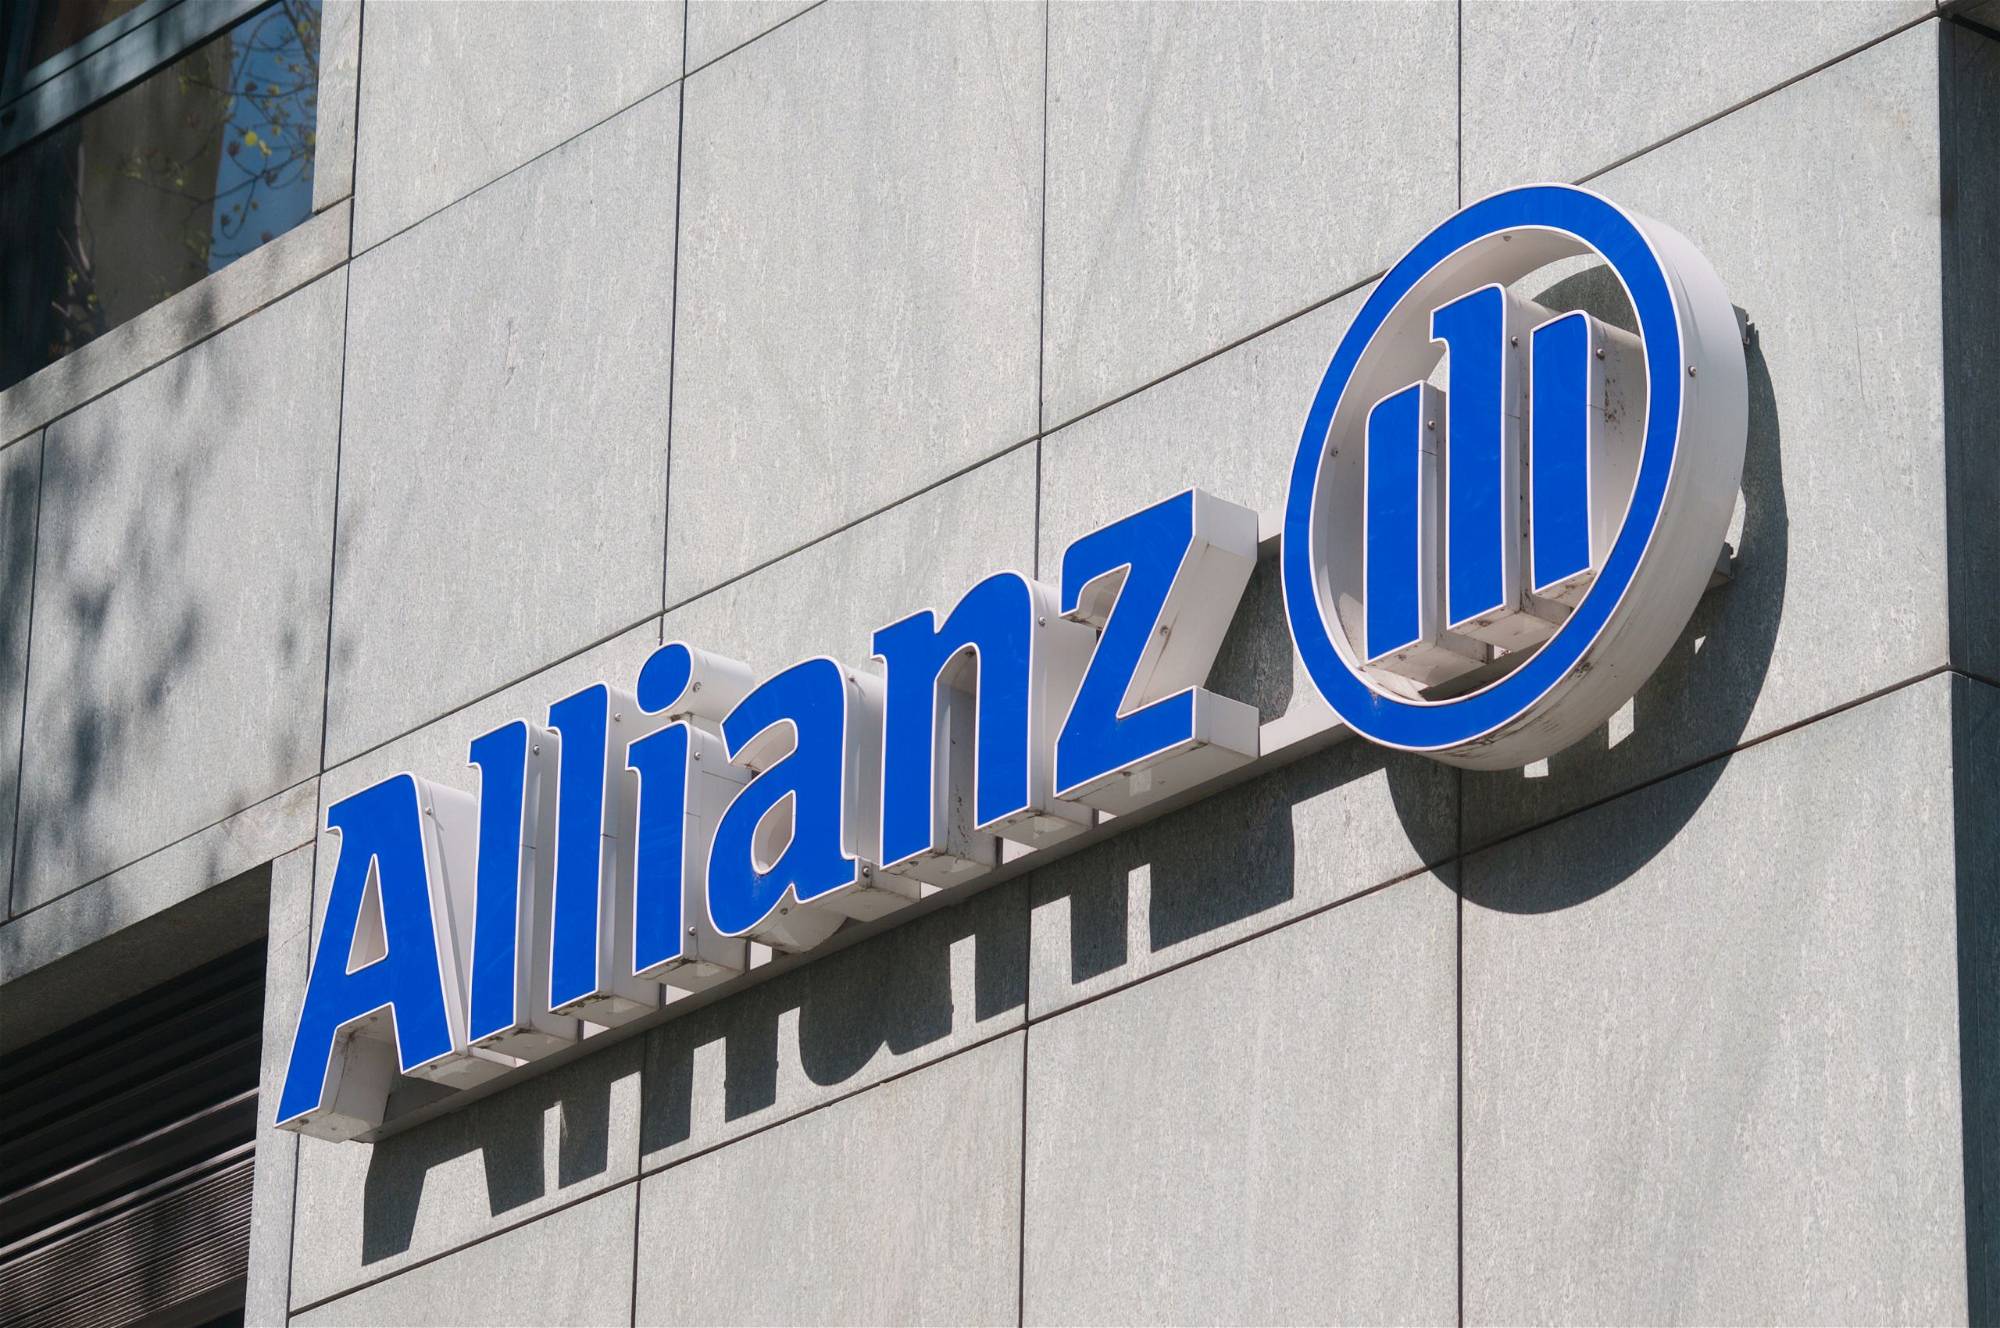 Allianz-Aktie: Sollten Sie jetzt kaufen?